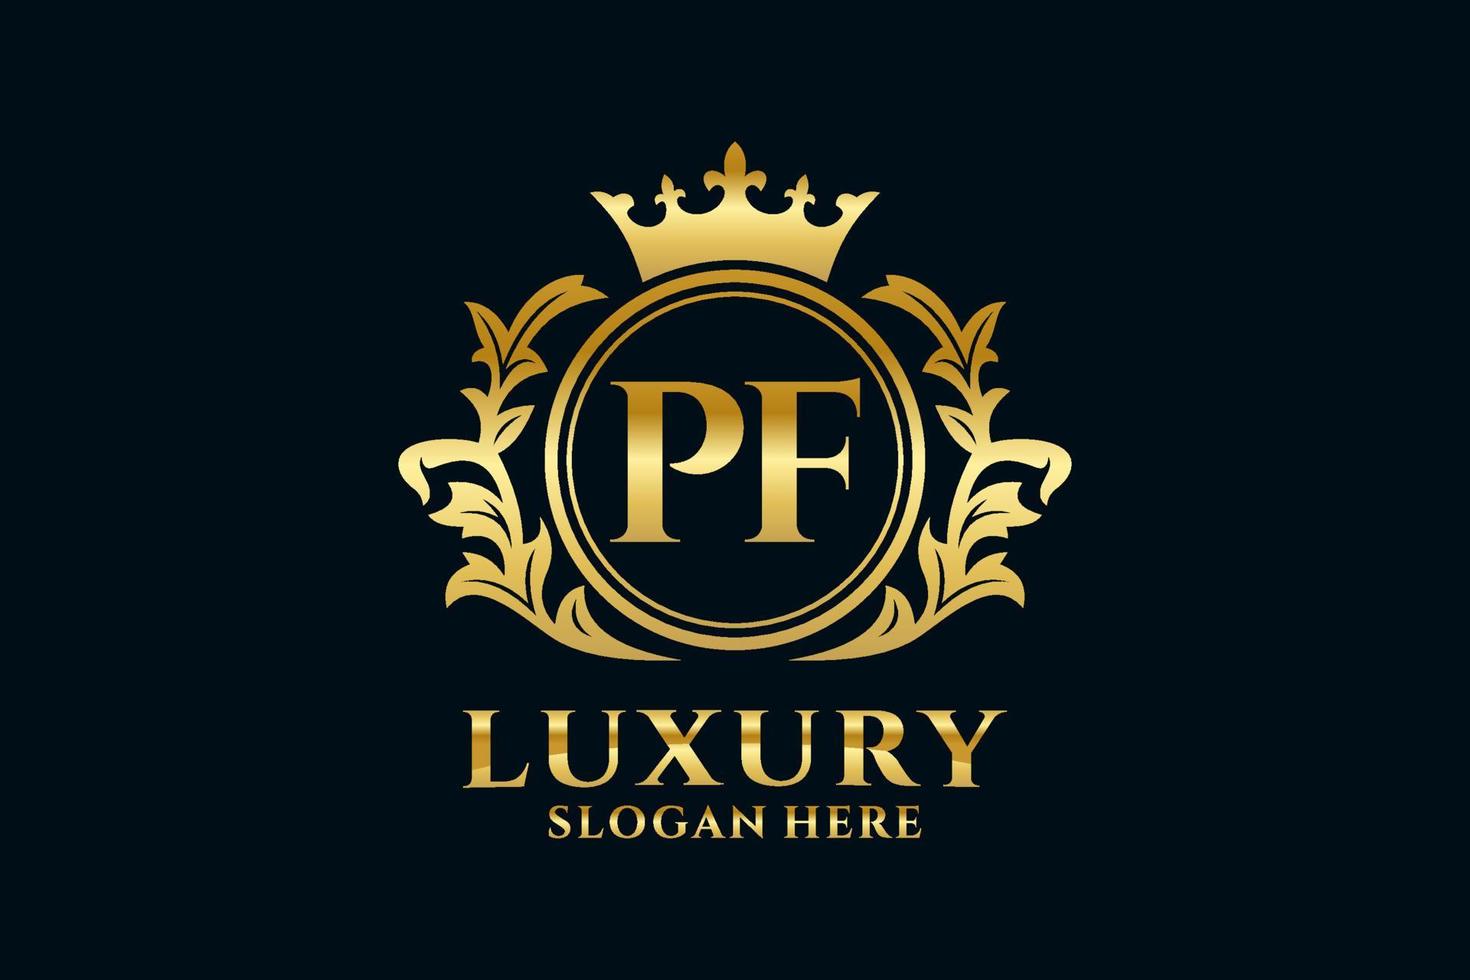 modèle de logo de luxe royal lettre initiale pf dans l'art vectoriel pour les projets de marque de luxe et autres illustrations vectorielles.